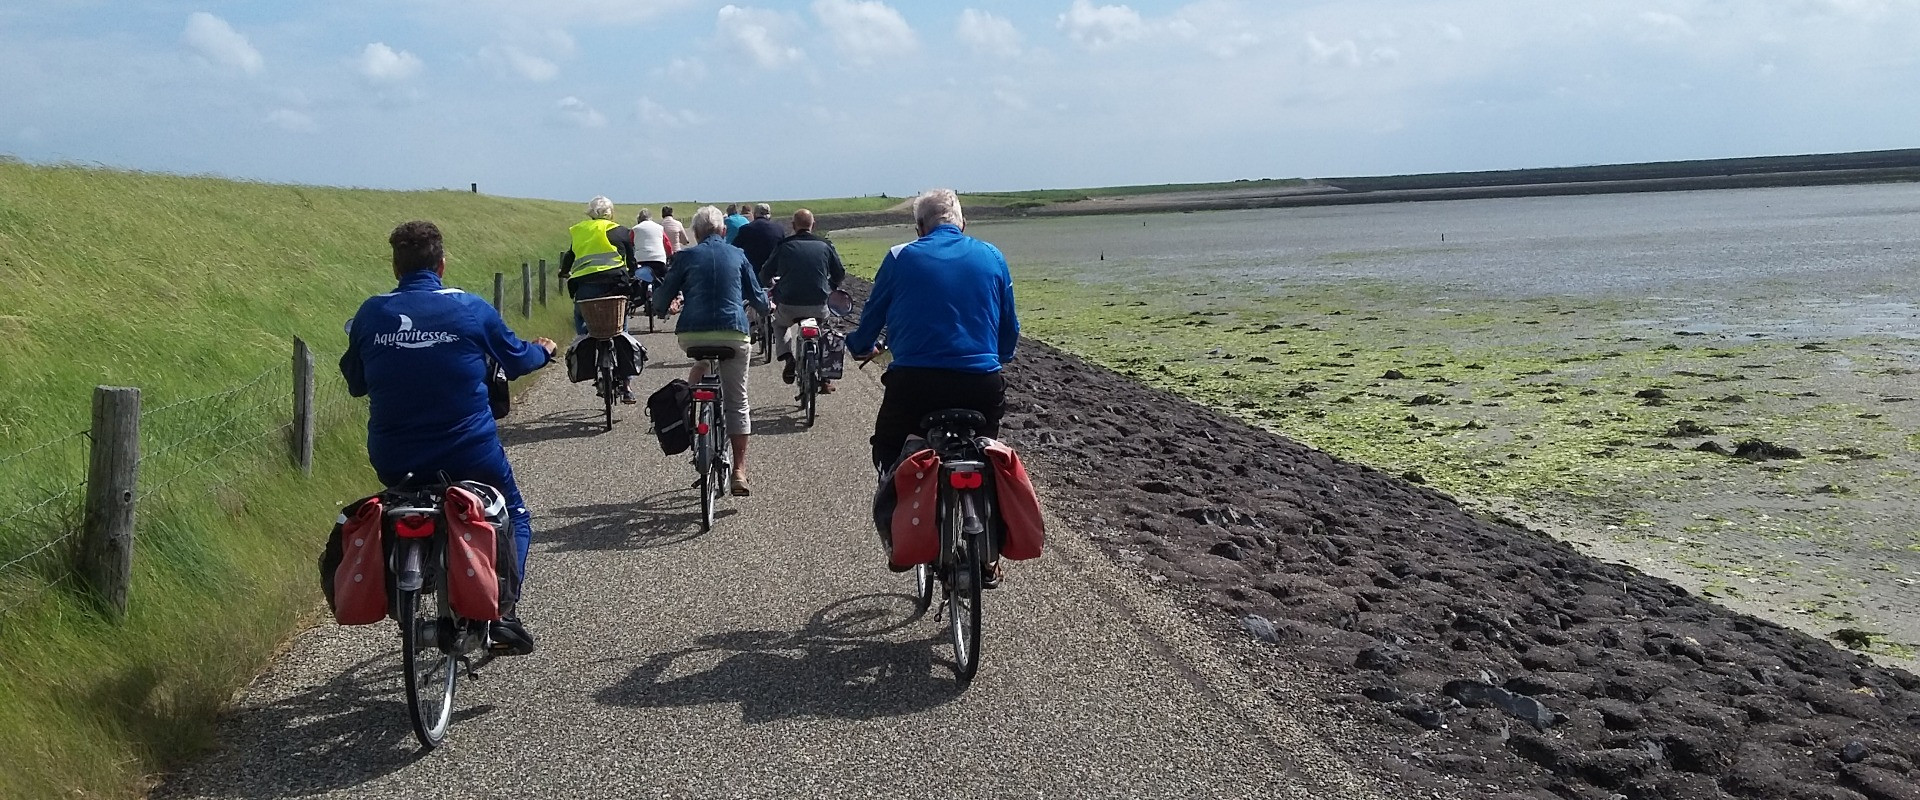 fietsen langs de dijk van Schouwen-Duiveland